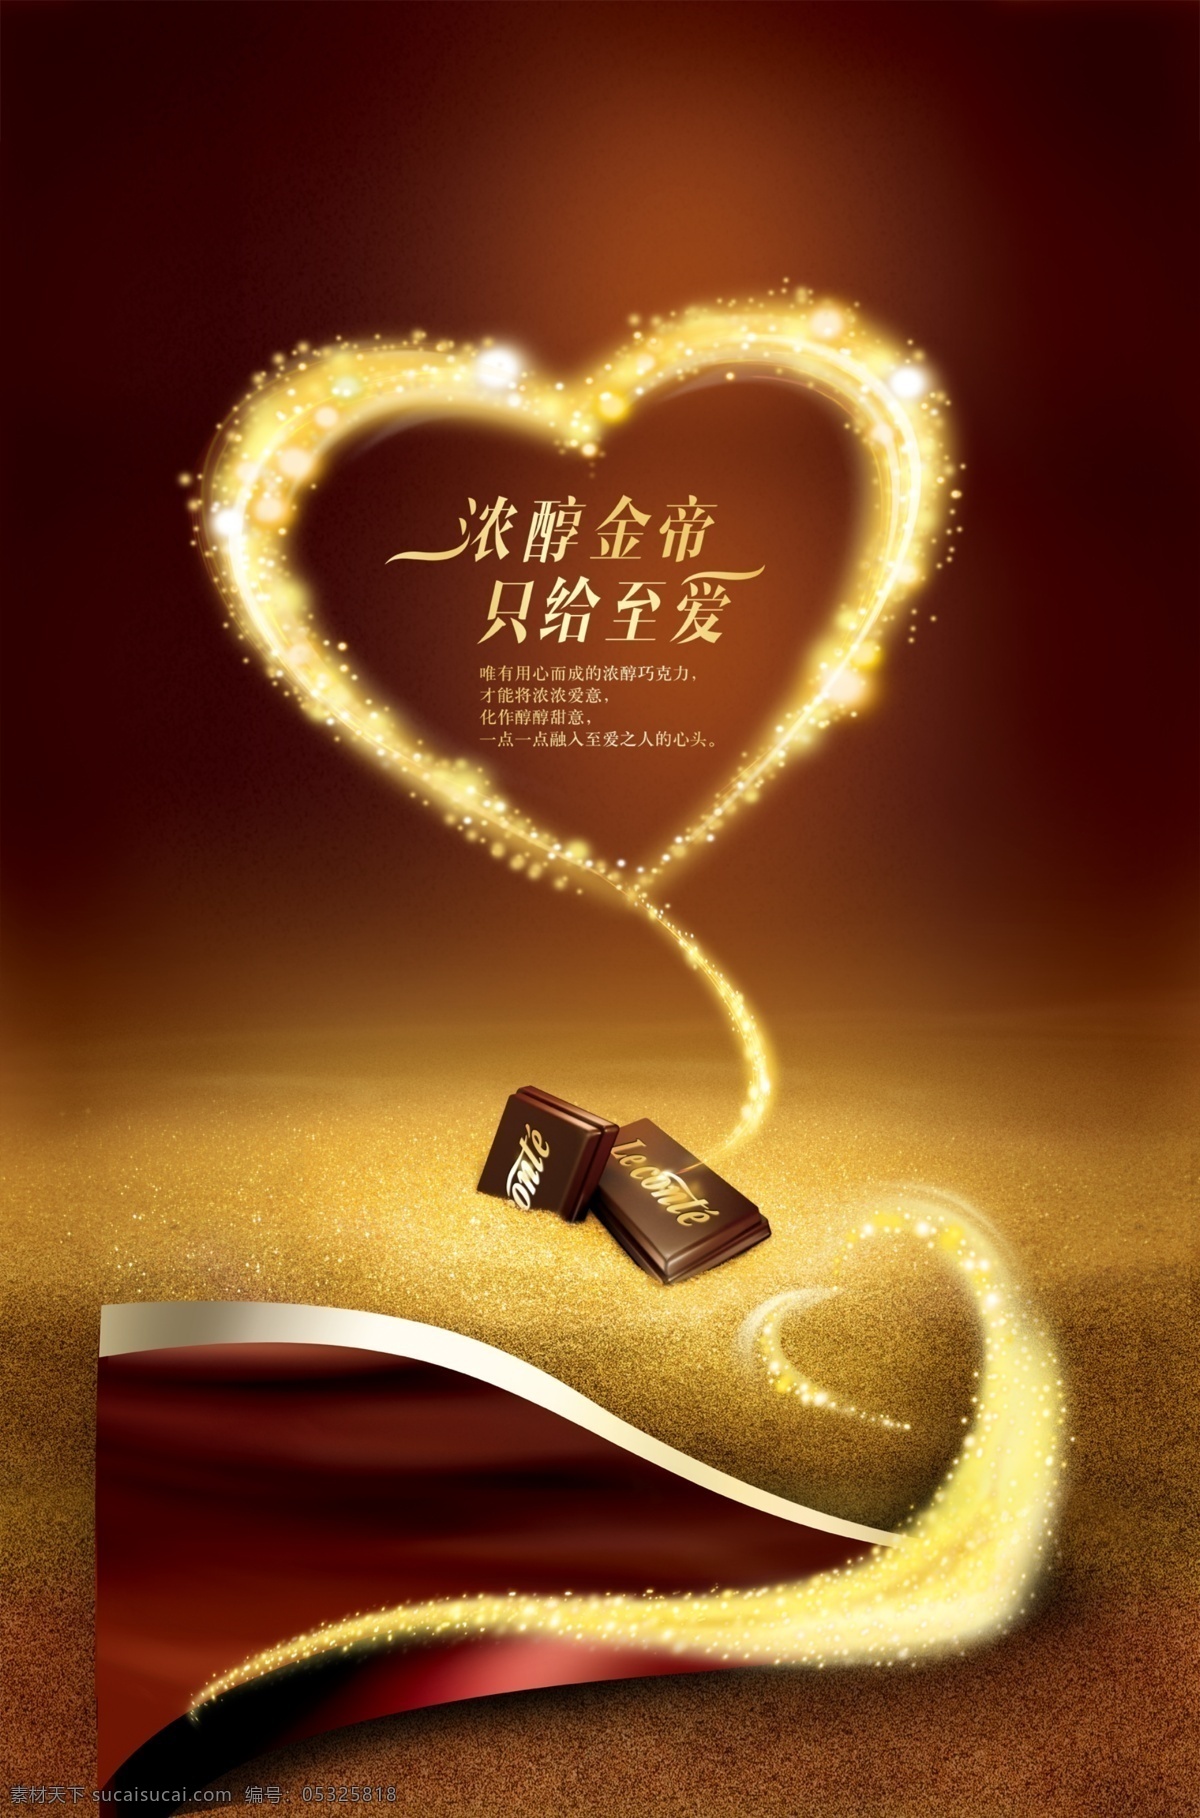 分层 广告 金帝巧克力 巧克力 心形 源文件 海报 金色沙子 发光心形 银色波浪 巧克力波浪 暗红色波浪 咖啡色底图 闪亮心形 其他海报设计